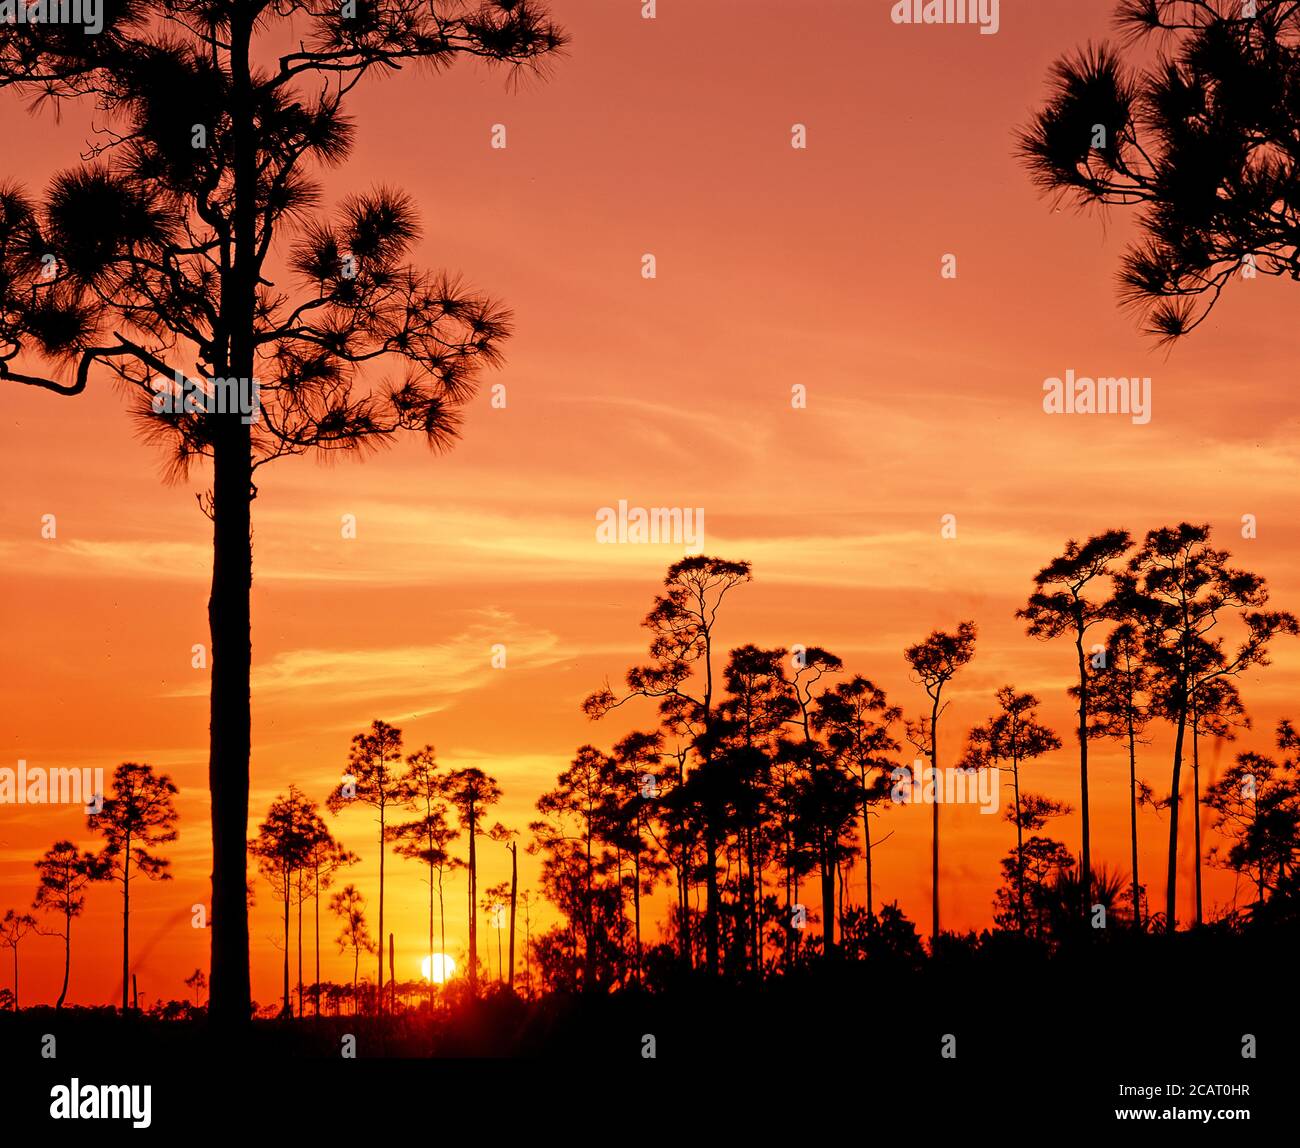 Bäume silhouetted gegen eine orange sunet Himmel in den Everglades Nationalpark im Süden Floridas in den Vereinigten Staaten Stockfoto